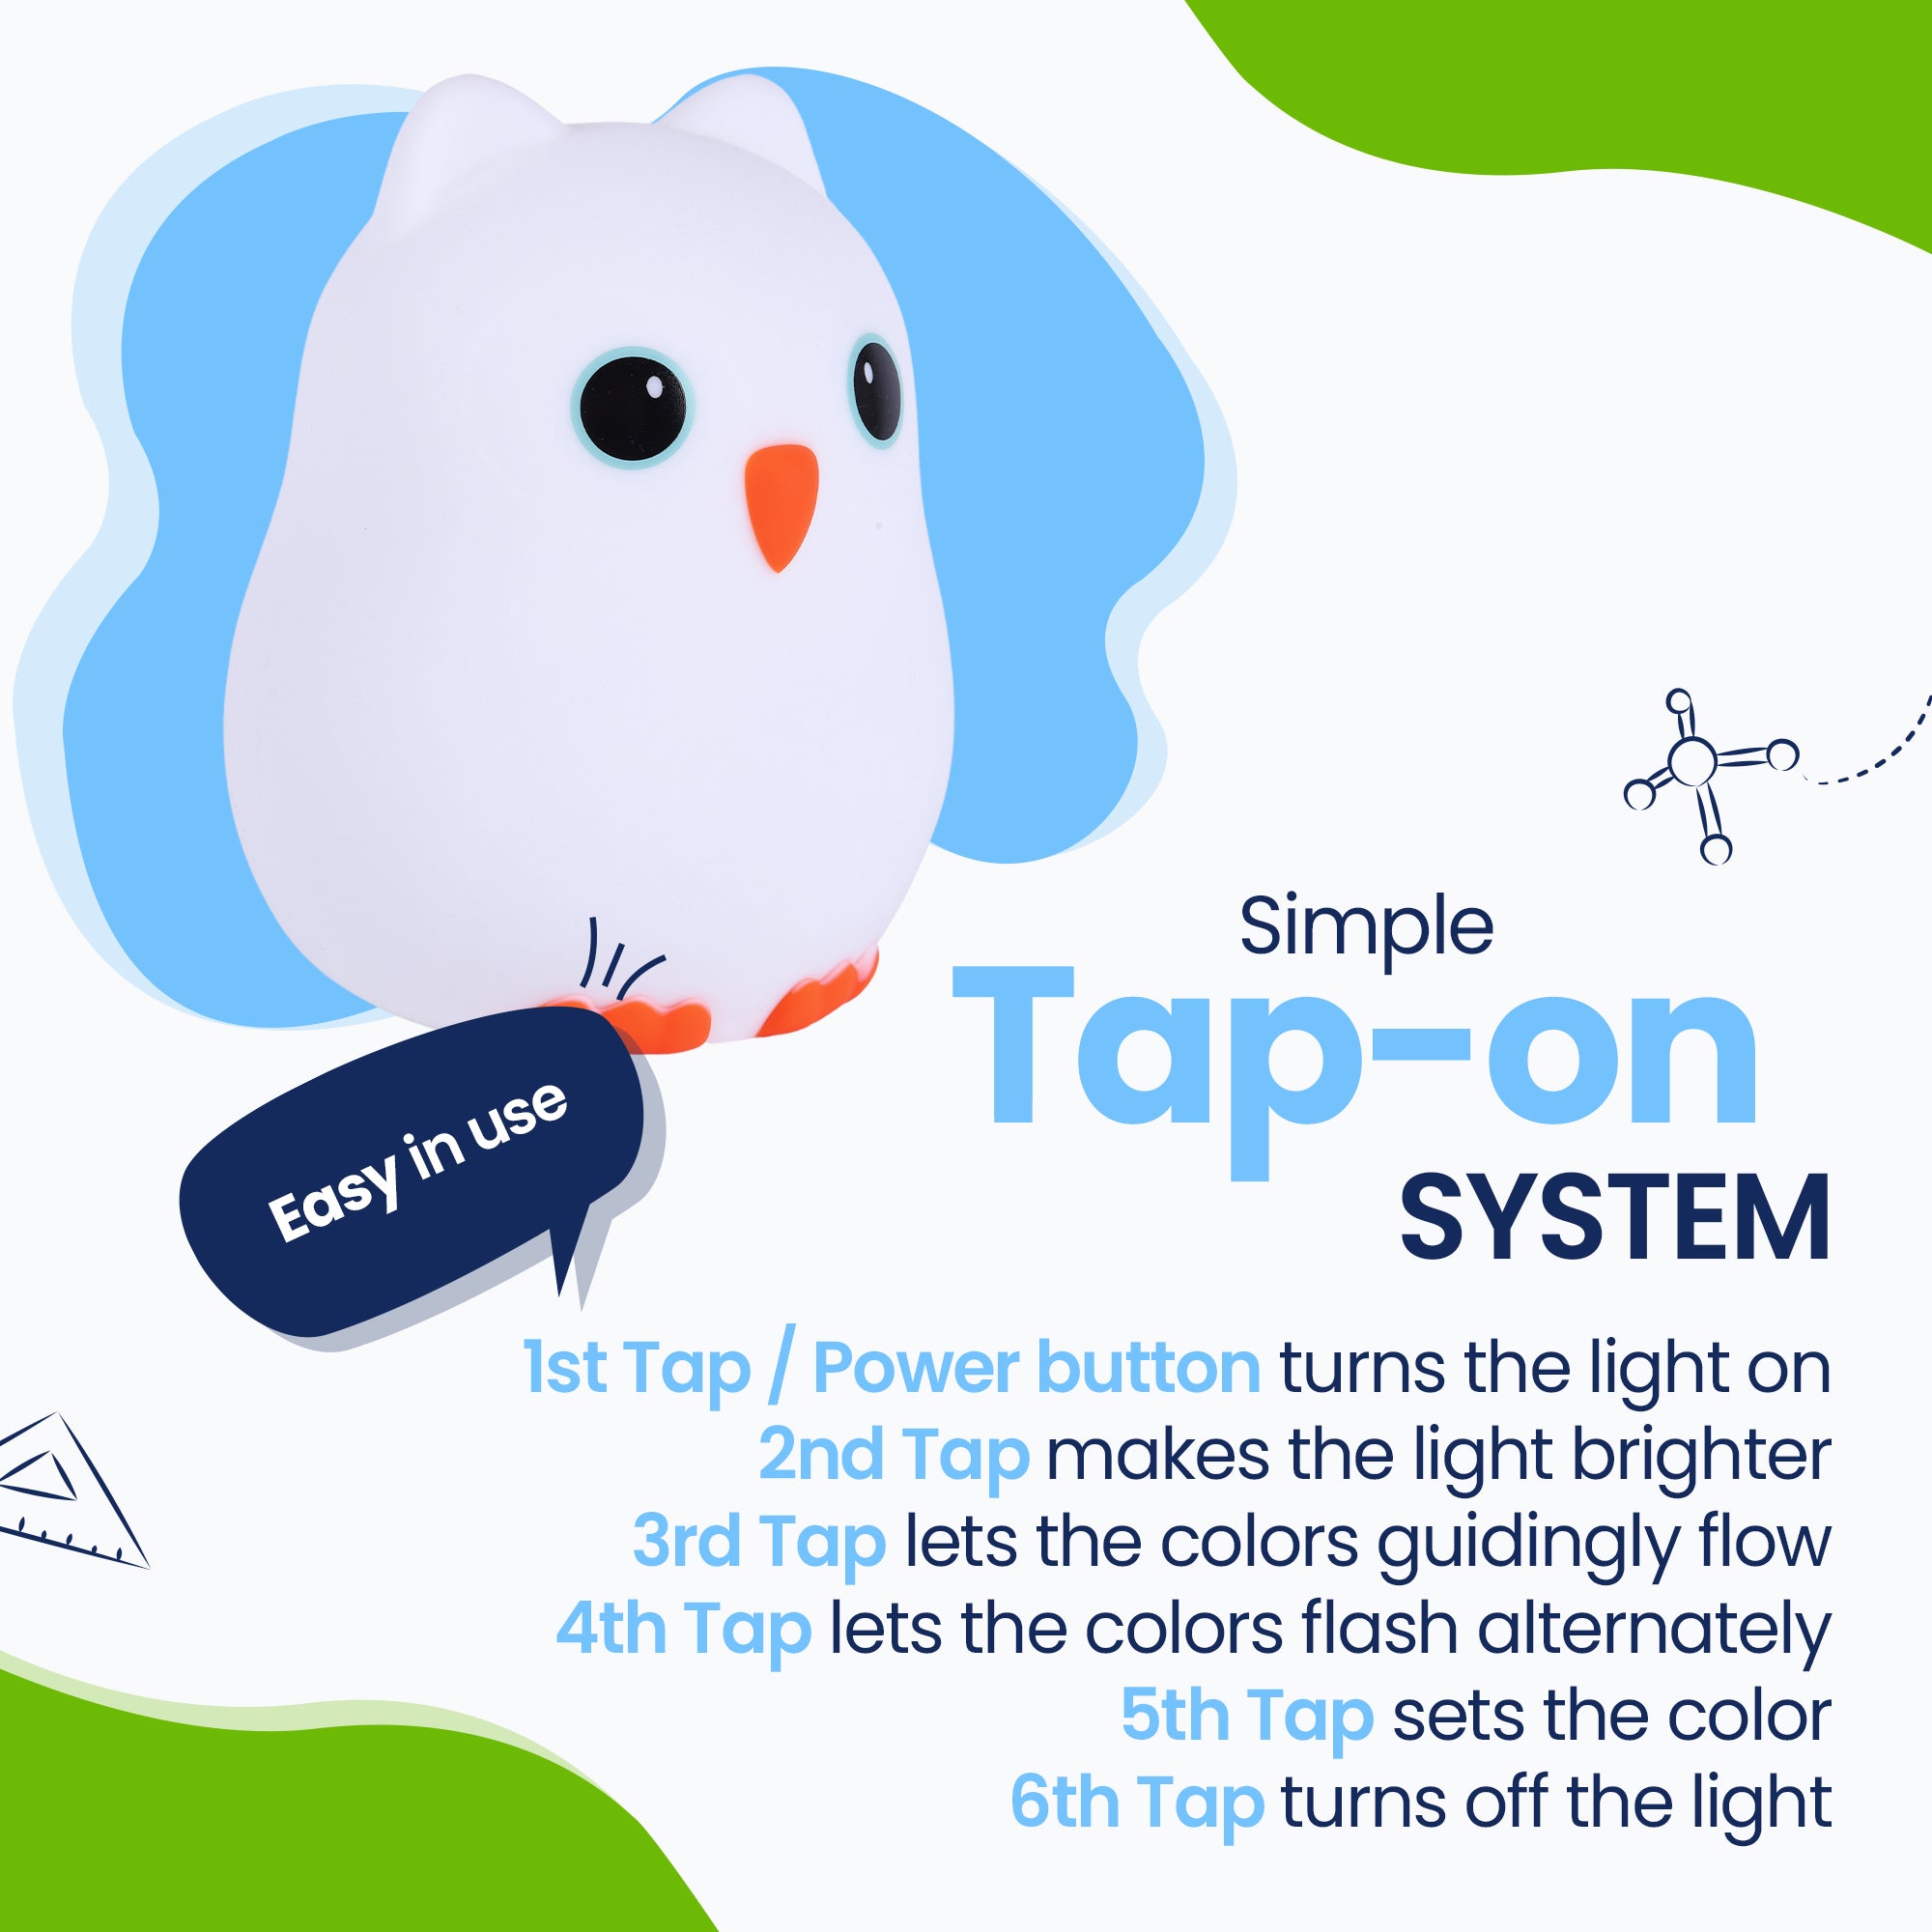 Prosty system Tap-on - Łatwy w użyciu - włącz światło - rozjaśnij światło - pozwól kolorom płynąć - naprzemiennie migaj kolorami - napraw kolor - wyłącz kolor